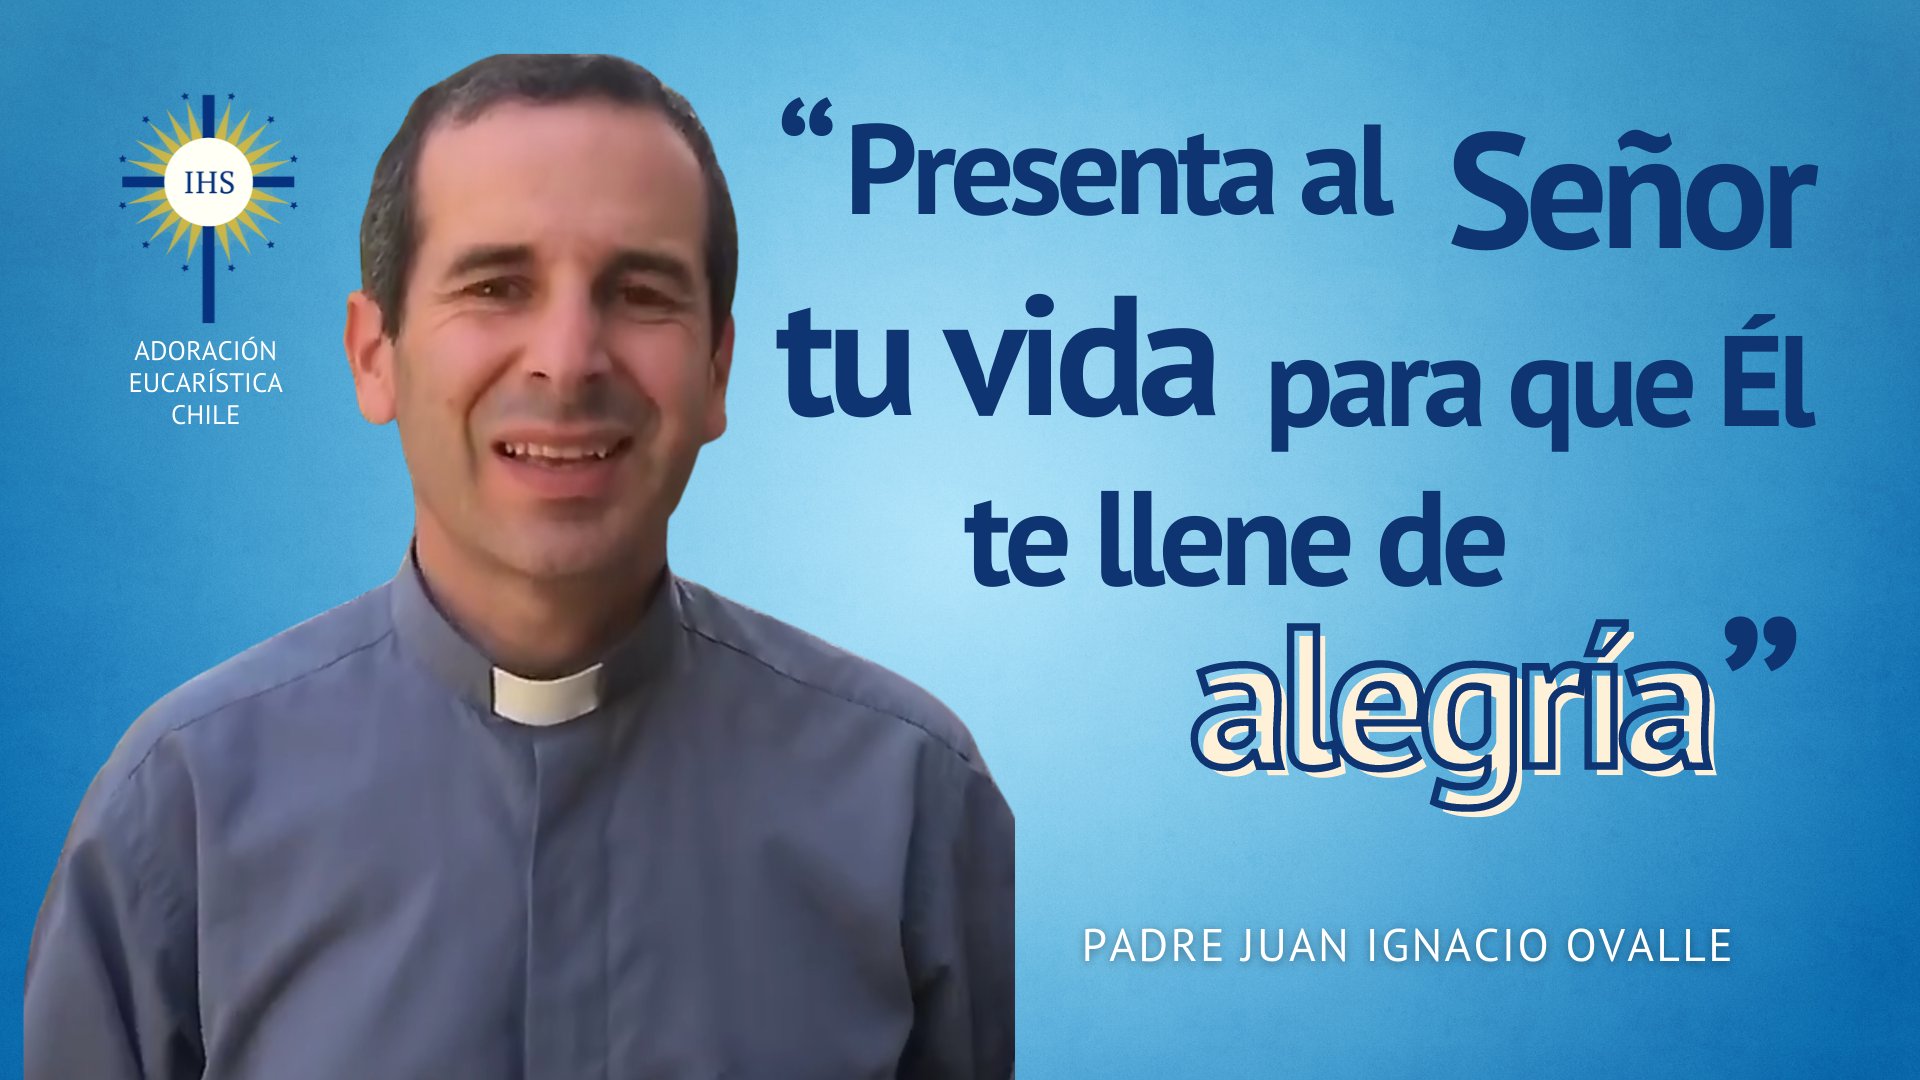 El padre Juan Ignacio Ovalle nos invita a renovarnos ante Jesús Eucaristía: